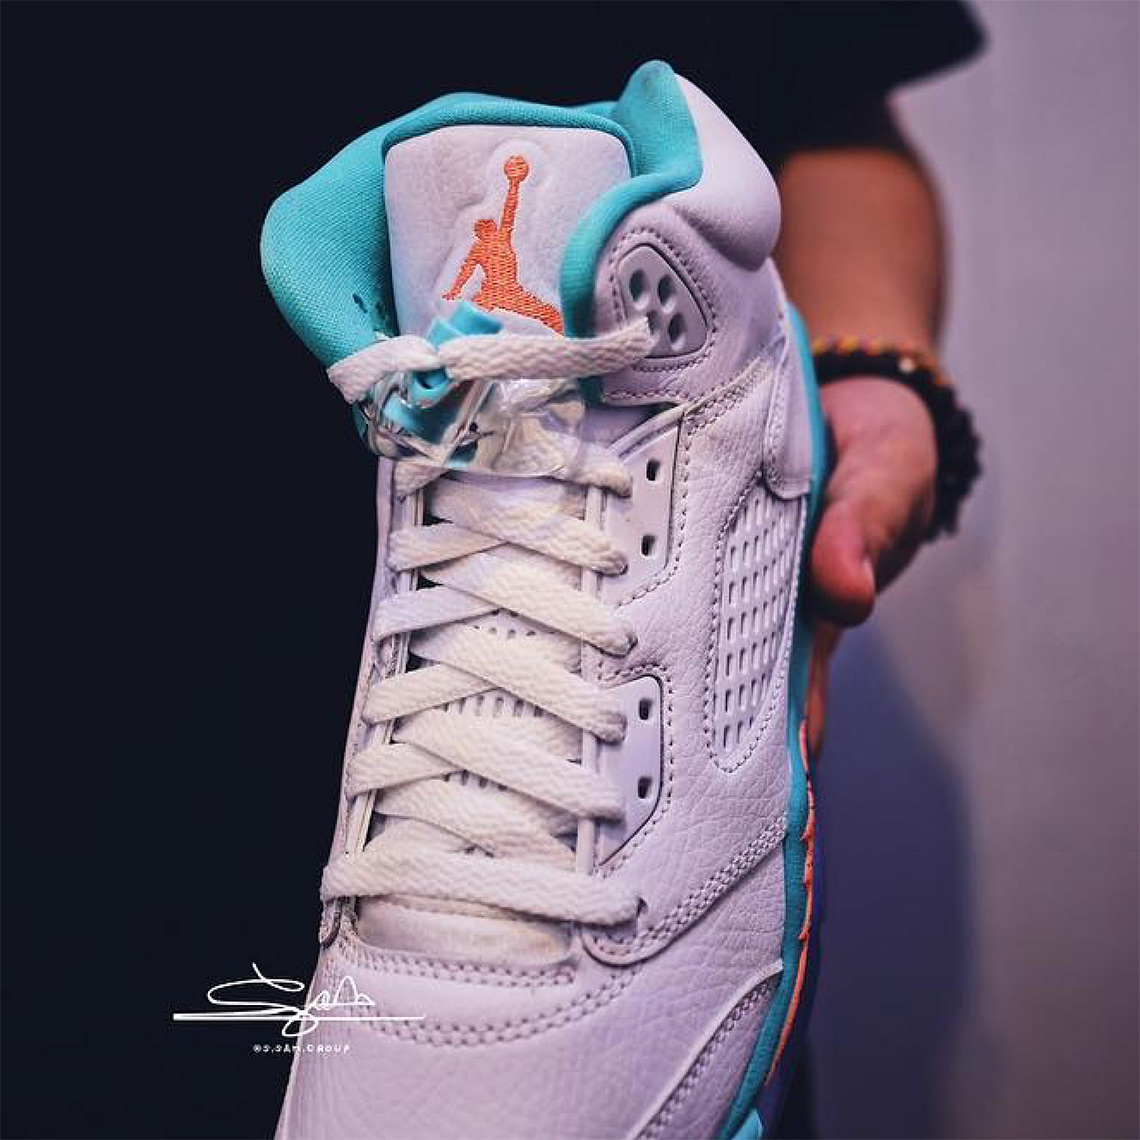 Jordan 5 Retro "Light Aqua" GS Date | SneakerNews.com